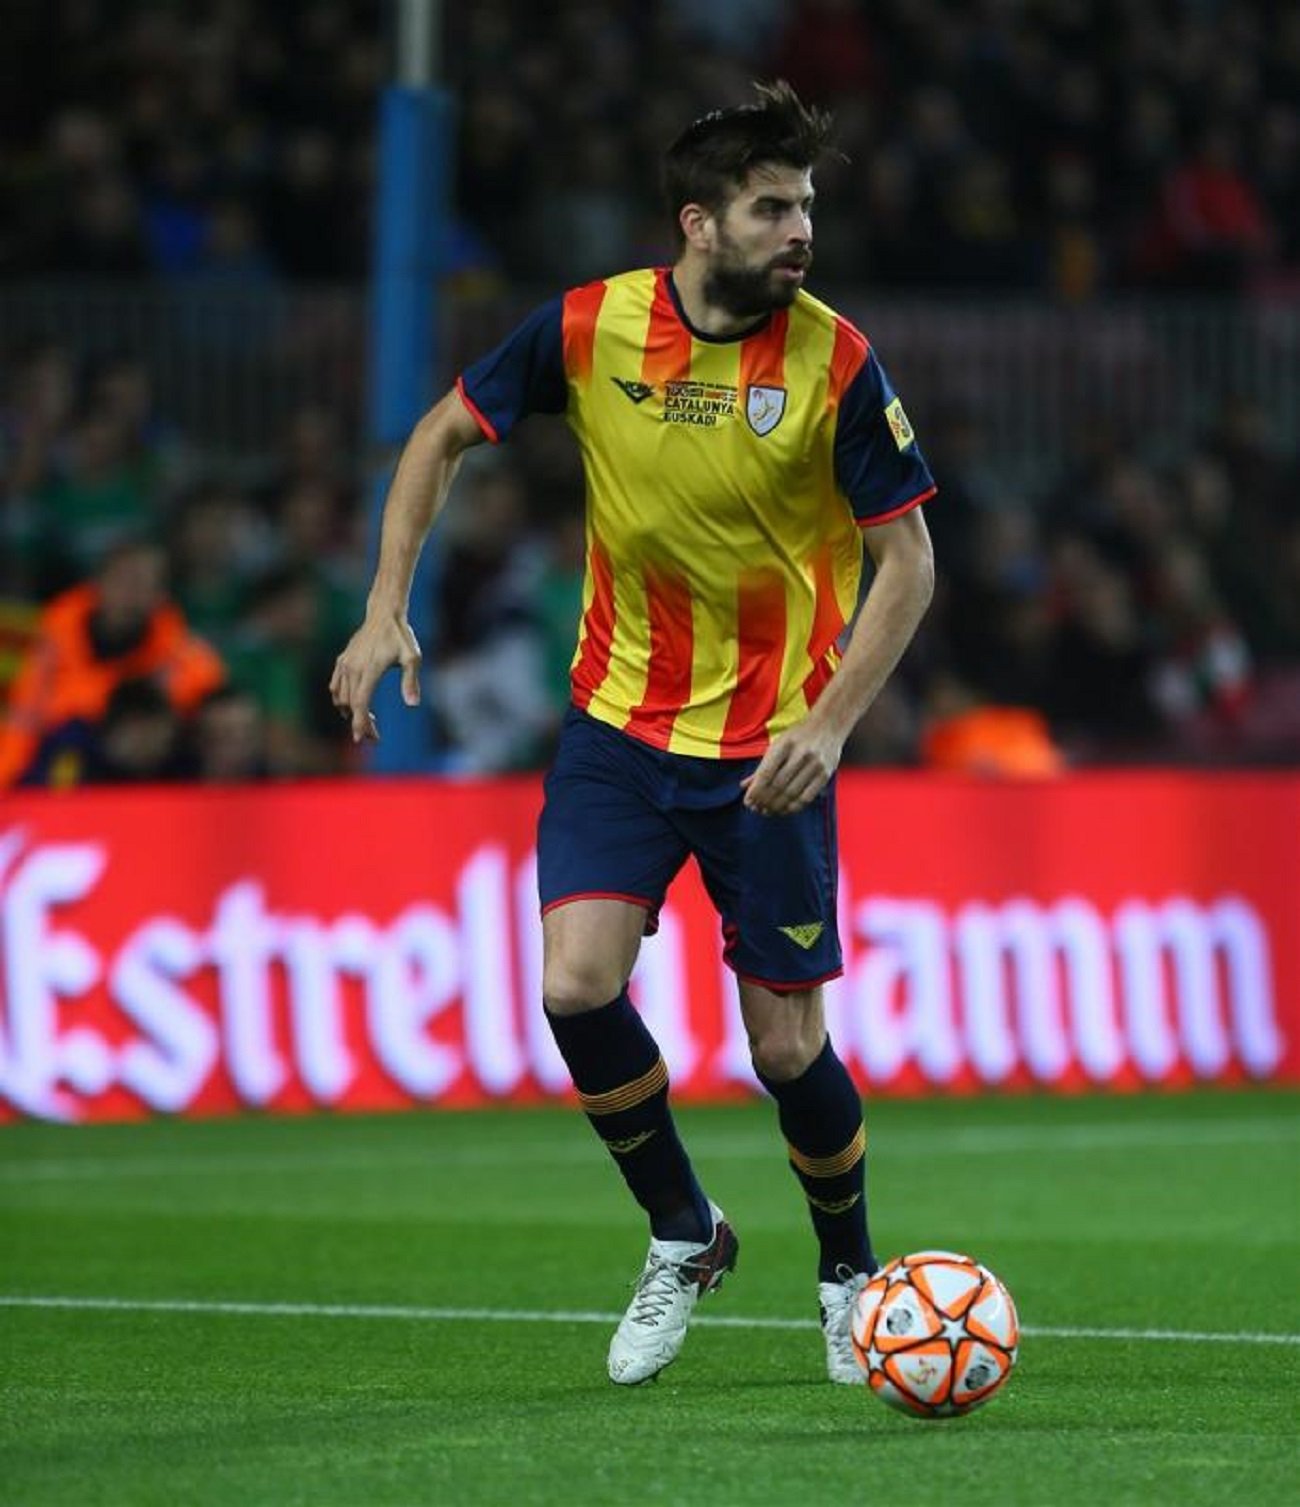 La selecció catalana de futbol podria vestir d'Adidas